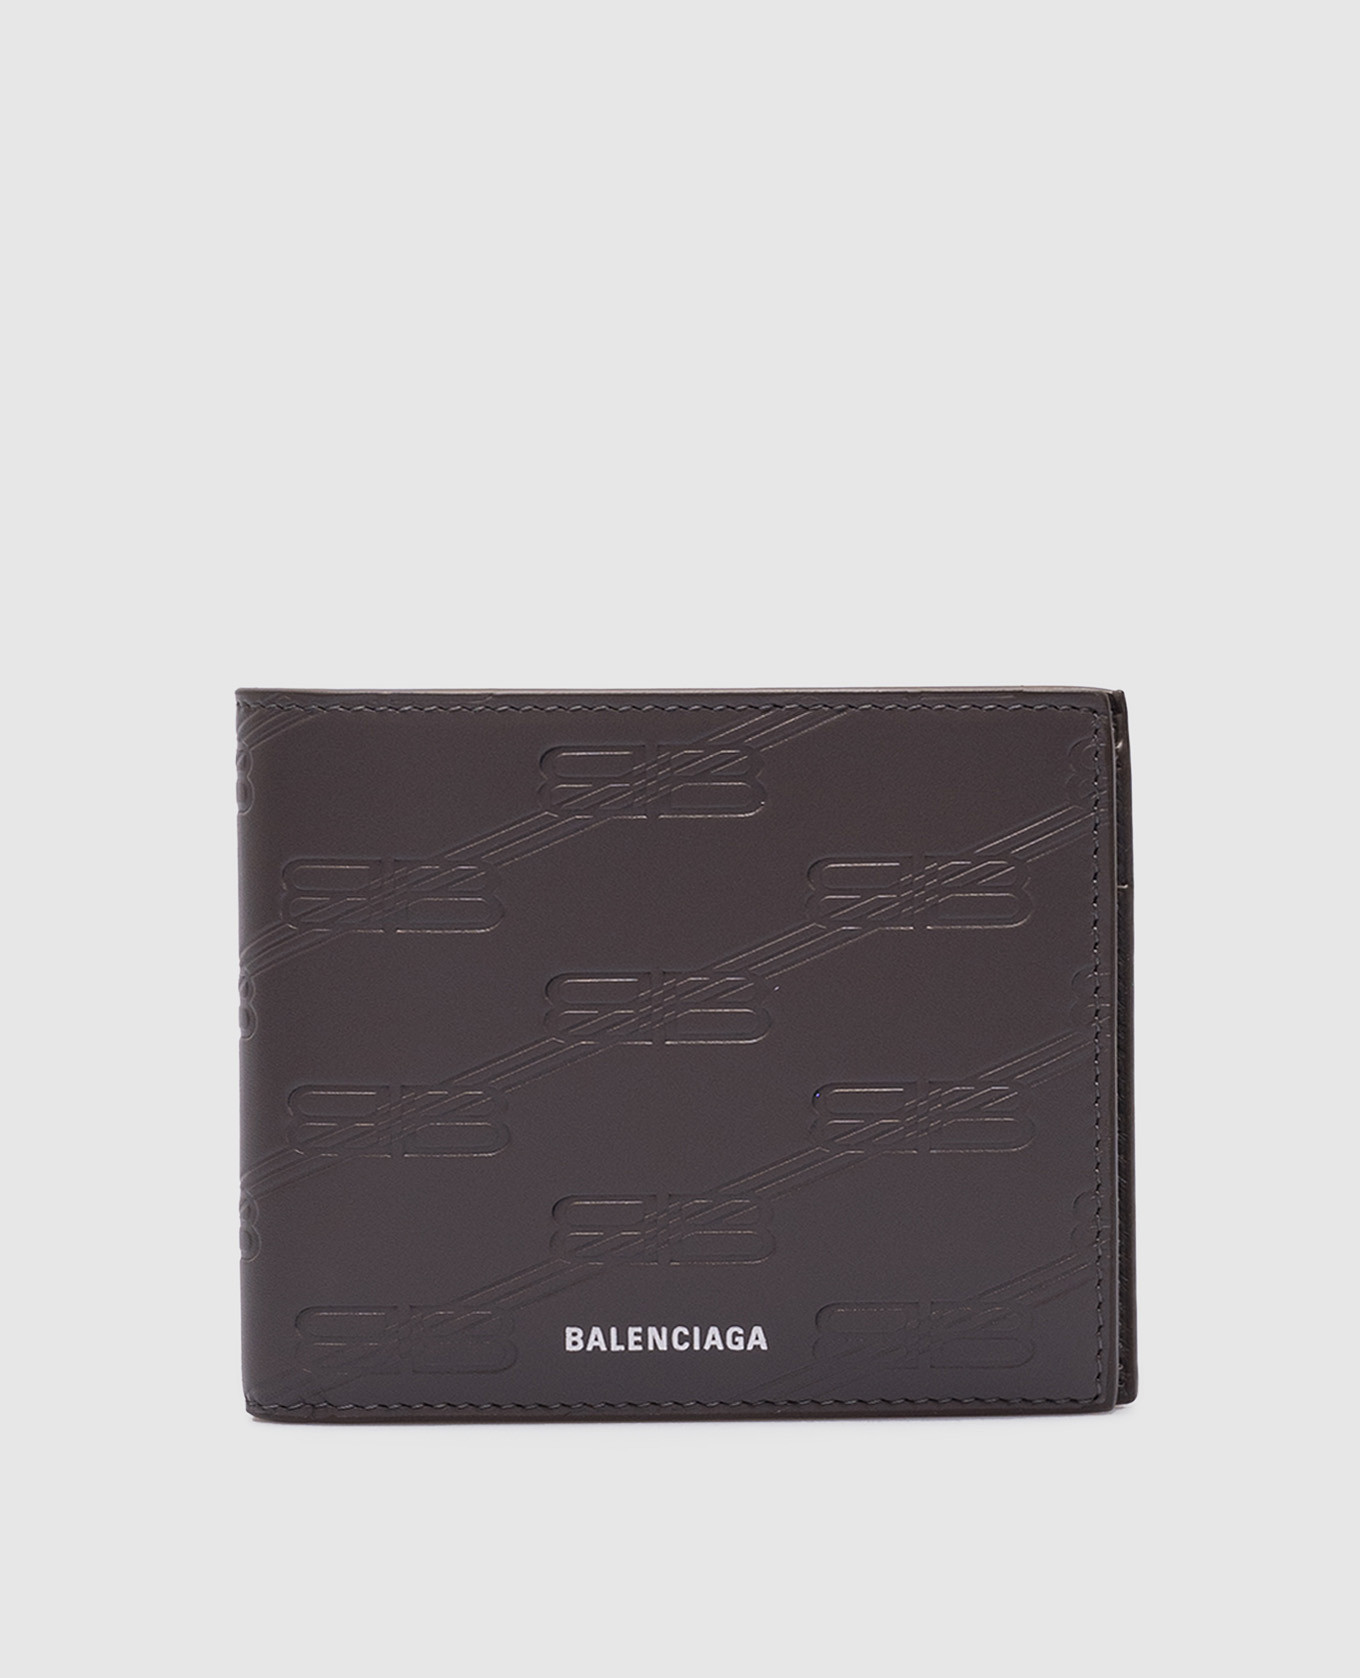 Серый кожаный портмоне с тиснением монограммы логотипа.